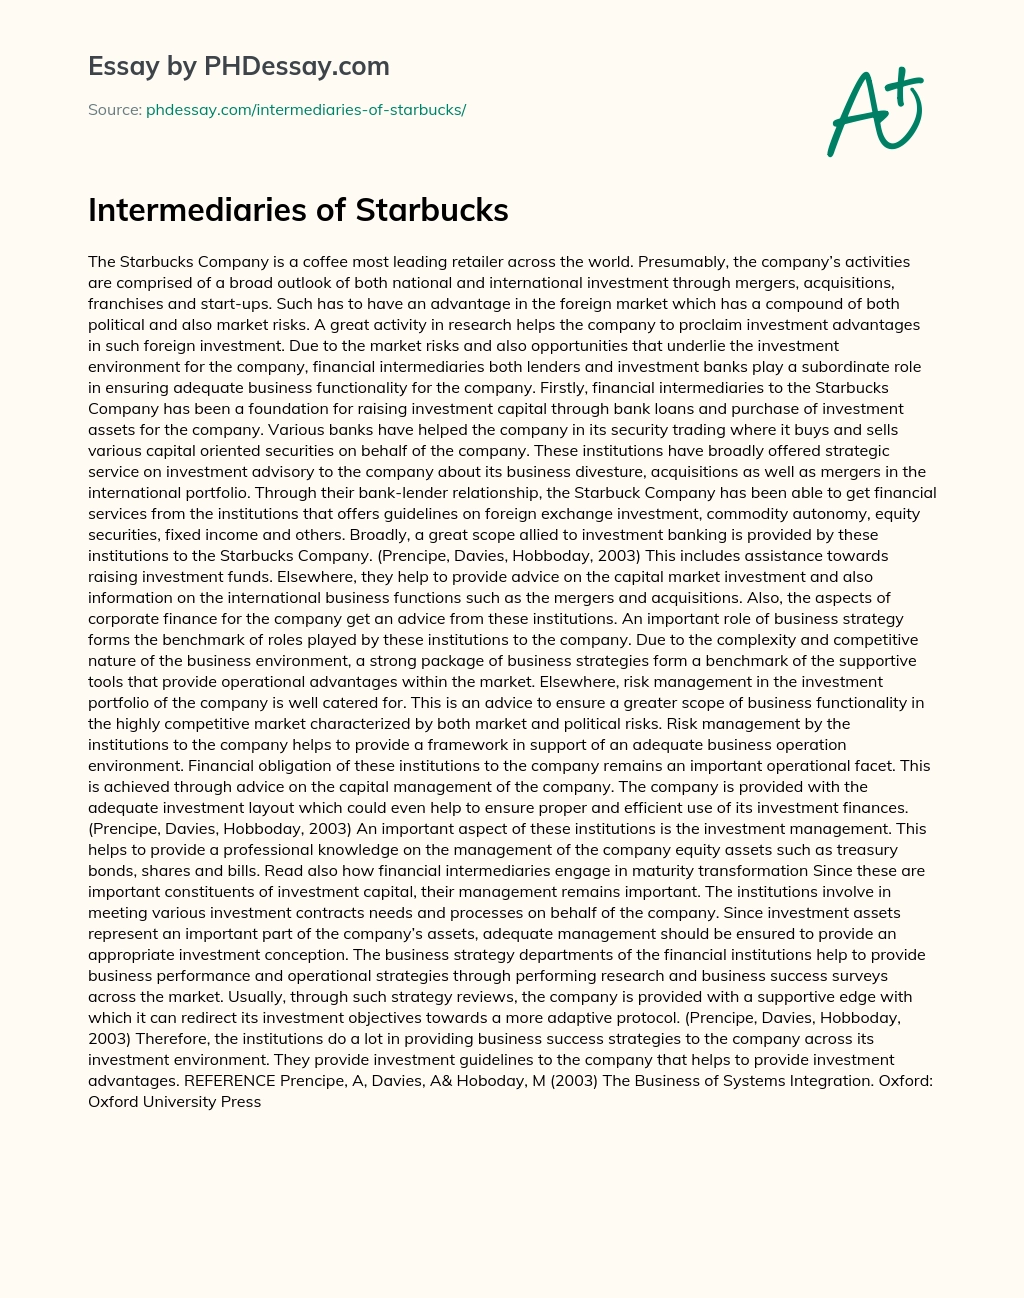 Intermediaries of Starbucks essay